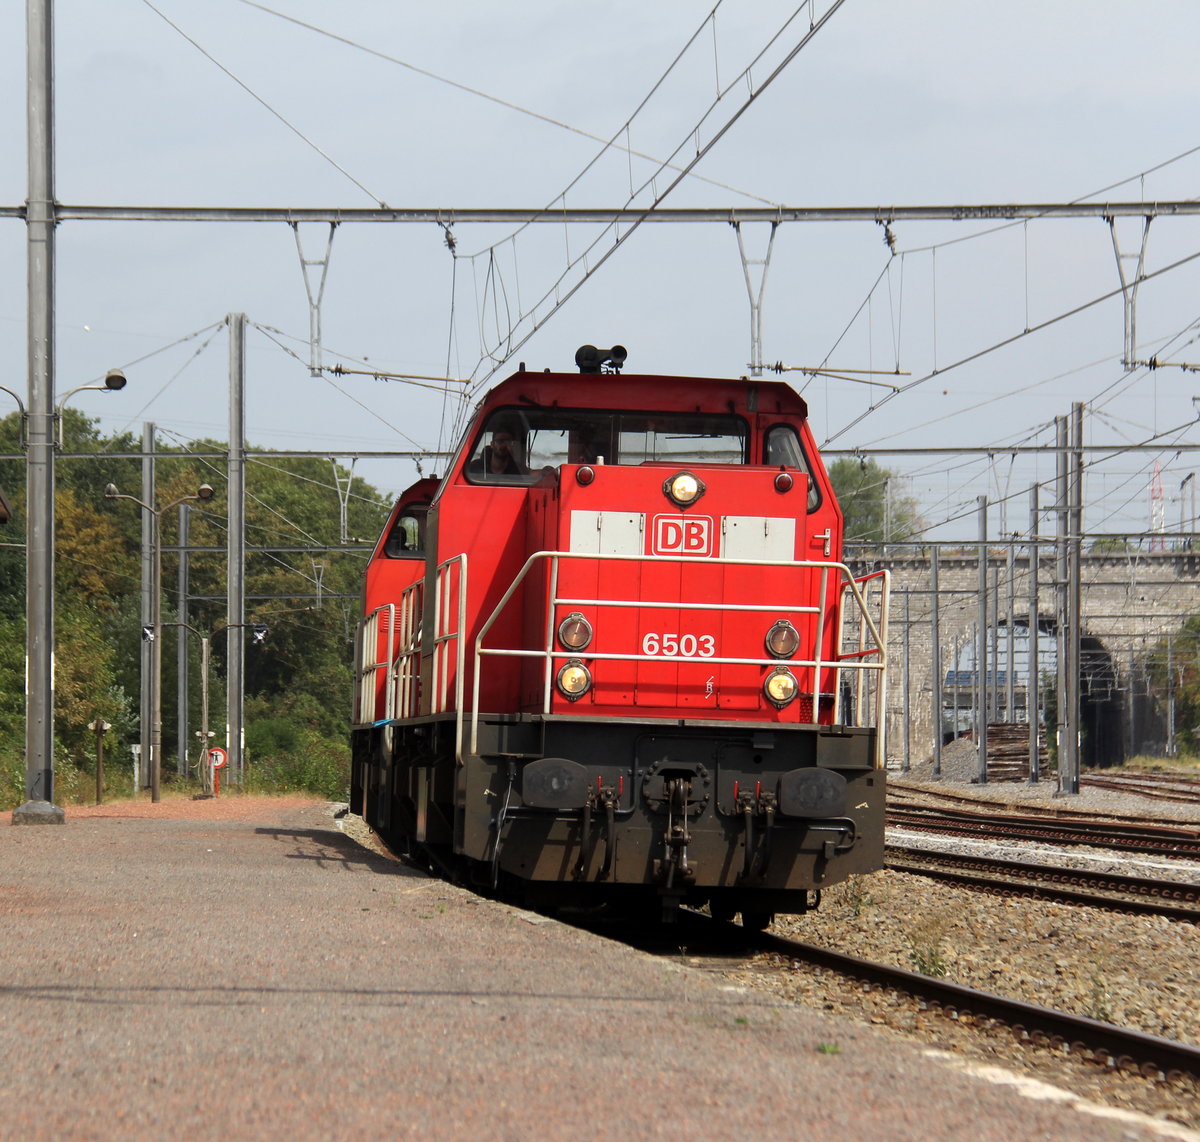 6503,6507 beide von  DB-Schenker  kommen als Lokzug aus Sittard(NL) nach Kinkempois(B) und kammen aus Richtung Sittard(NL),Geleen-Lutterade(NL),Maastricht(NL) und fuhren durch Vise(B) in Richtung Lüttich(B).
Aufgenommen in Vise-Gare(B).
Bei Sommerwetter am Mittag vom 16.8.2018.